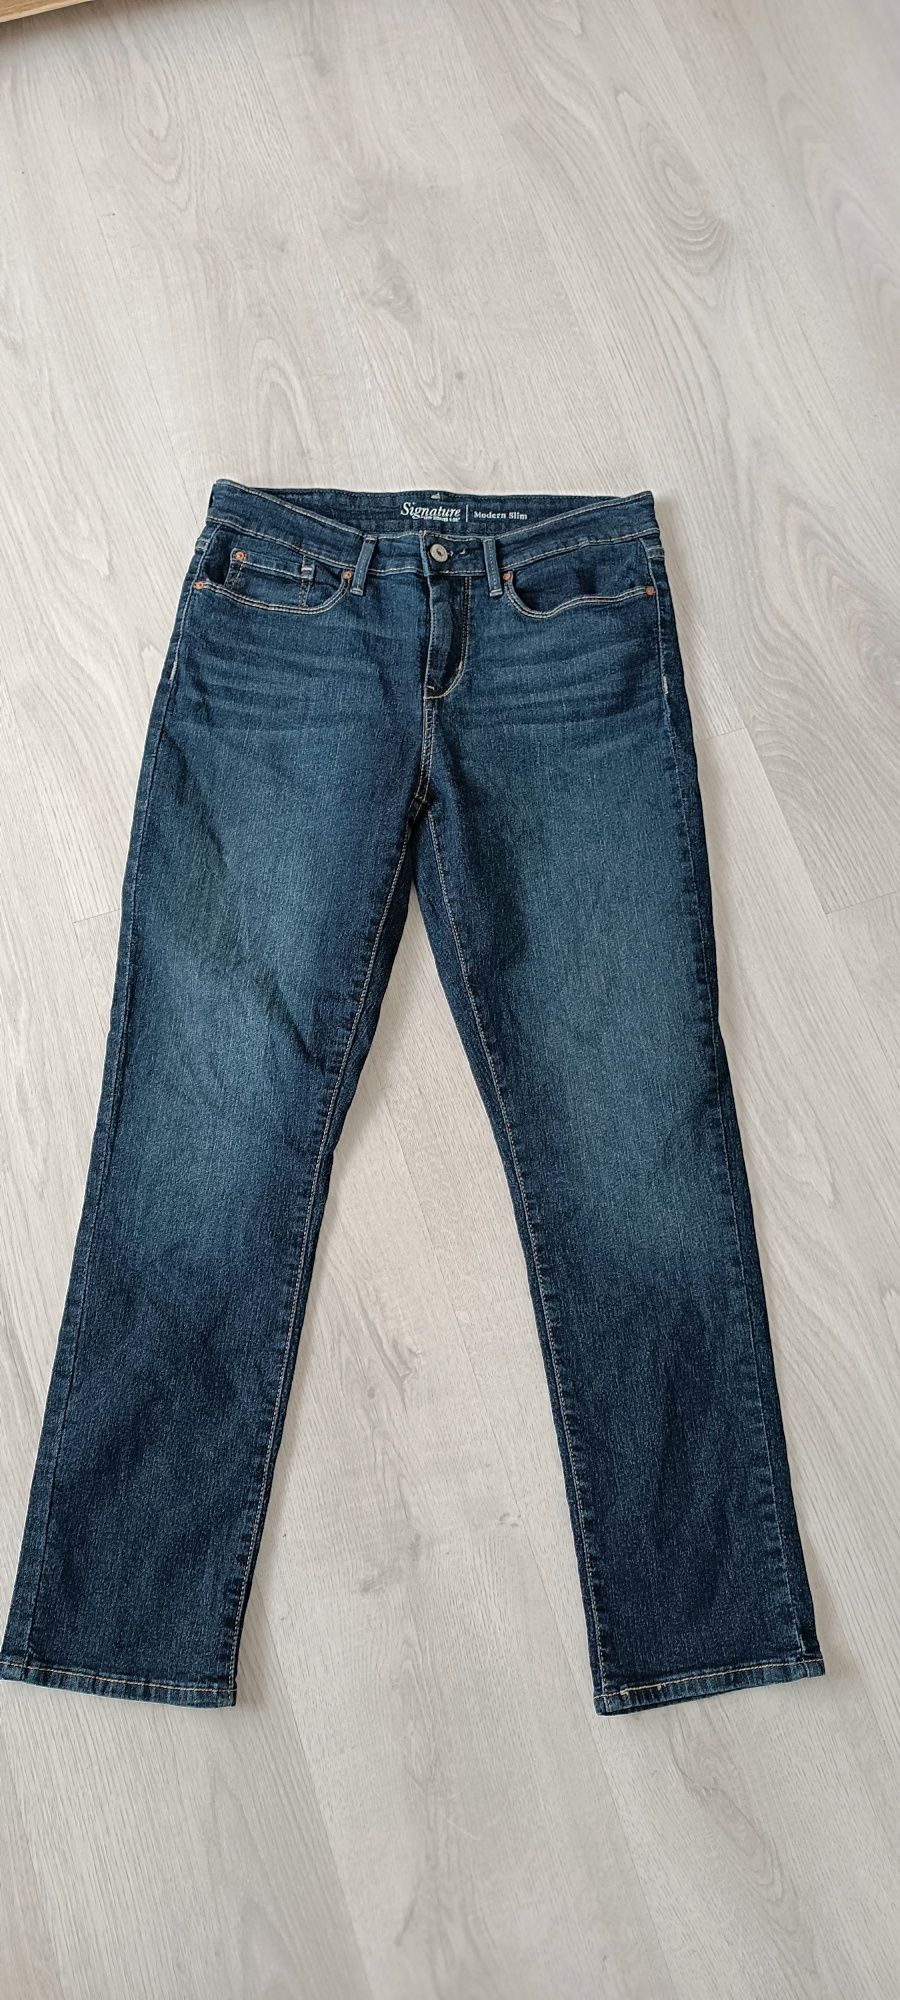 Spodnie jeansowe Levi's Strauss roz 30x32